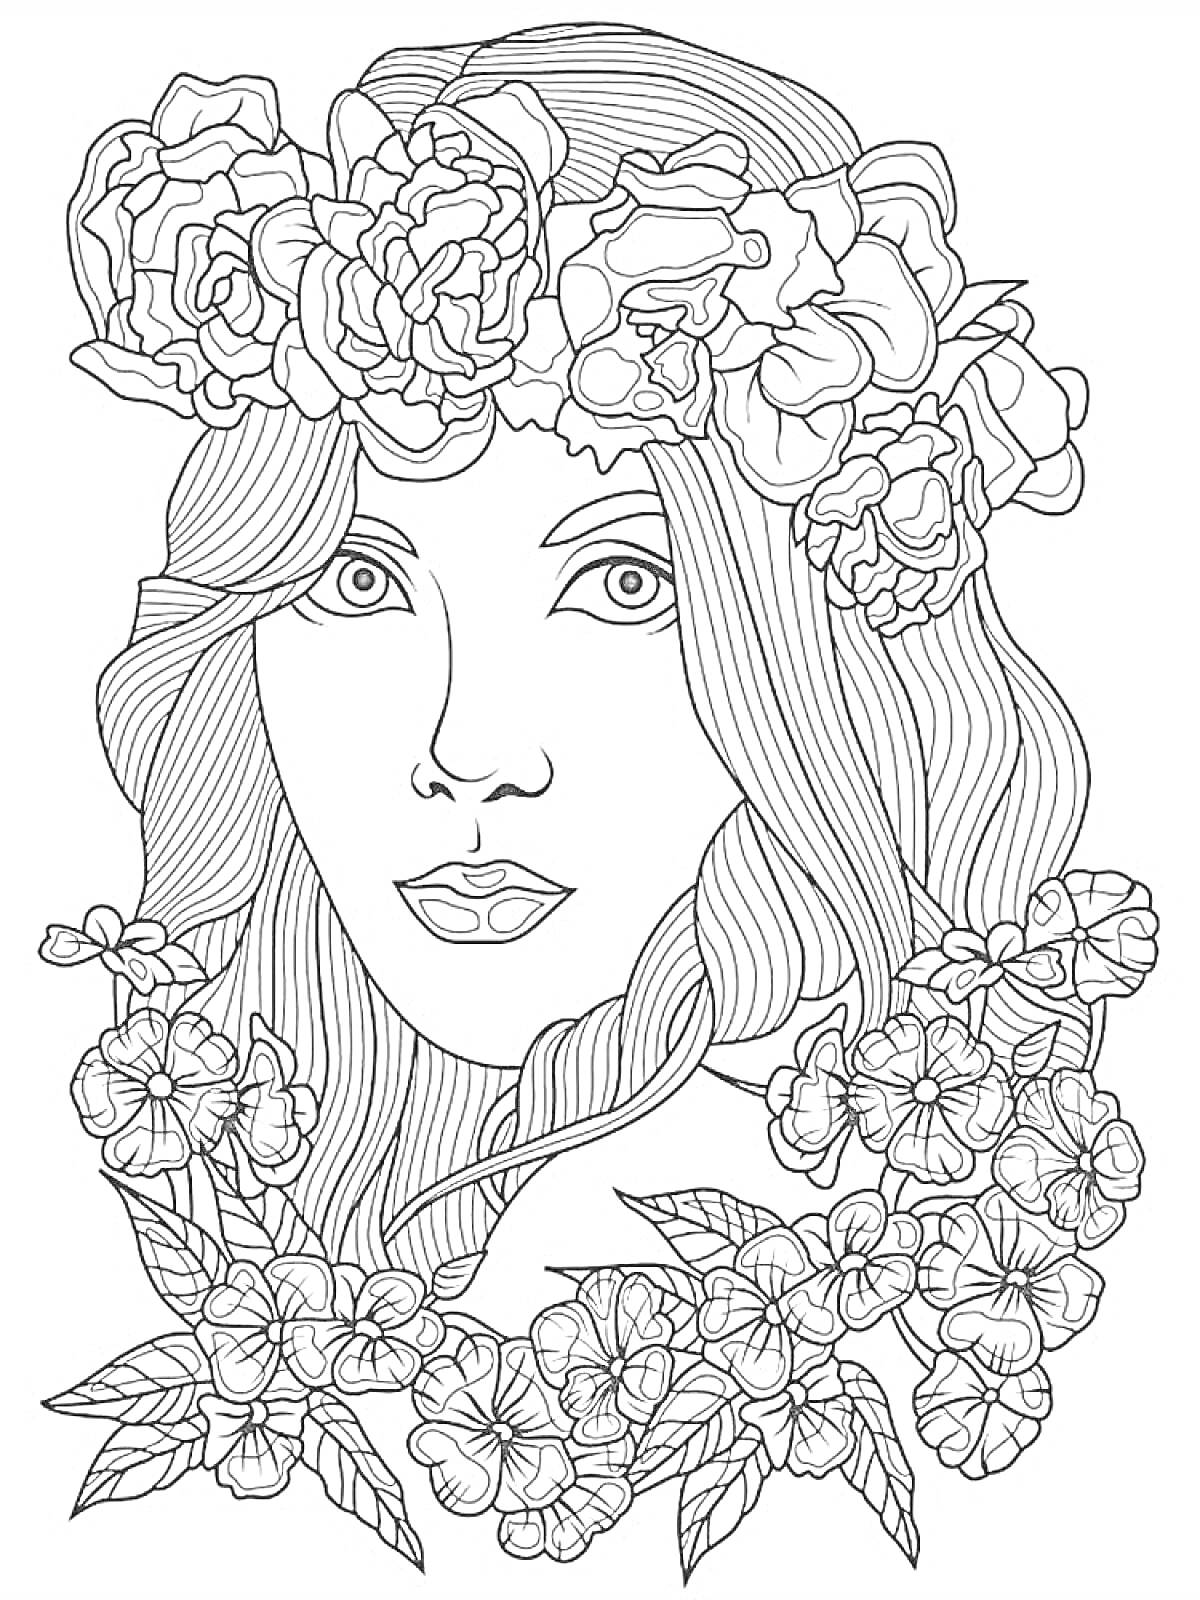 Раскраска Женщина с длинными волосами и венком из цветов на голове